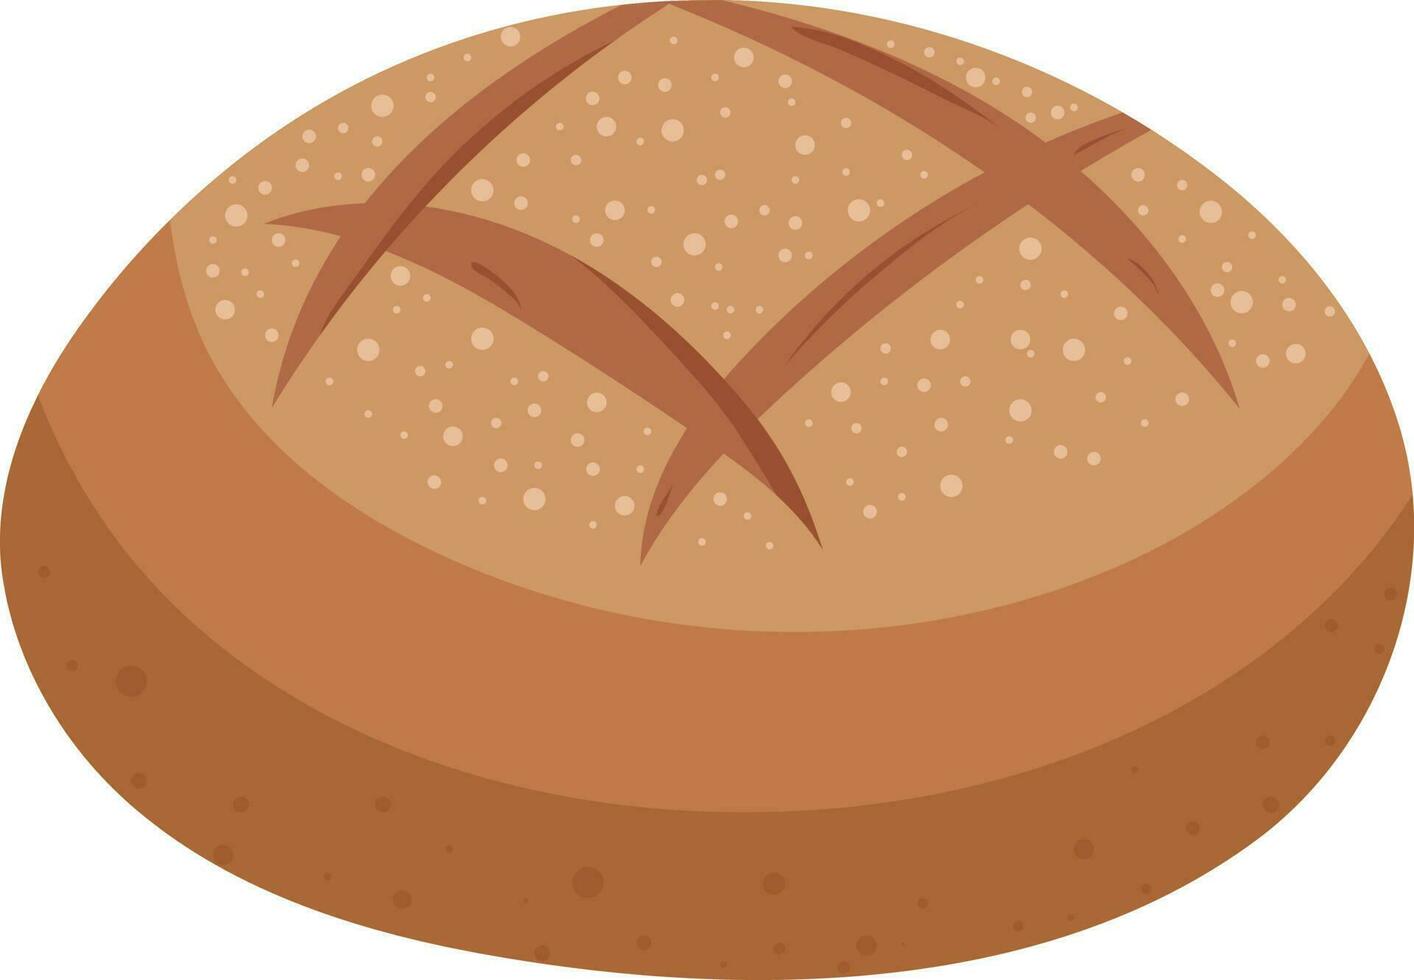 Bread Melon Loaf Basket Illustration Graphic Element Art Card vector